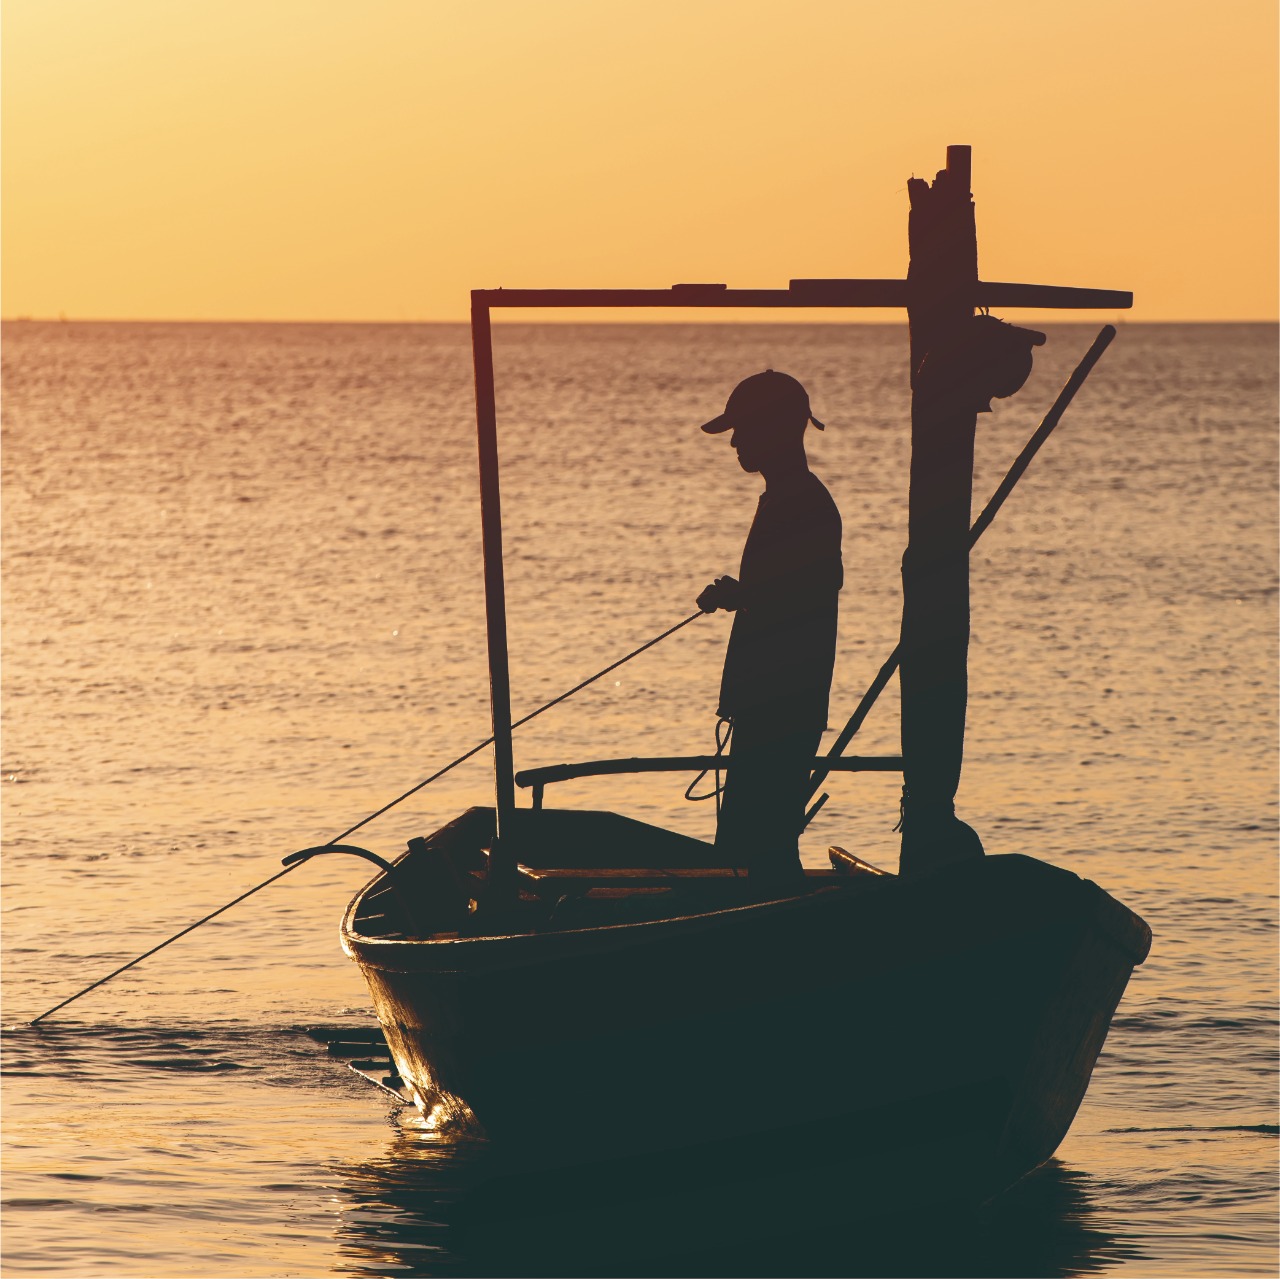 Valorando el trabajo de los pescadores y marinos de todo el mundo